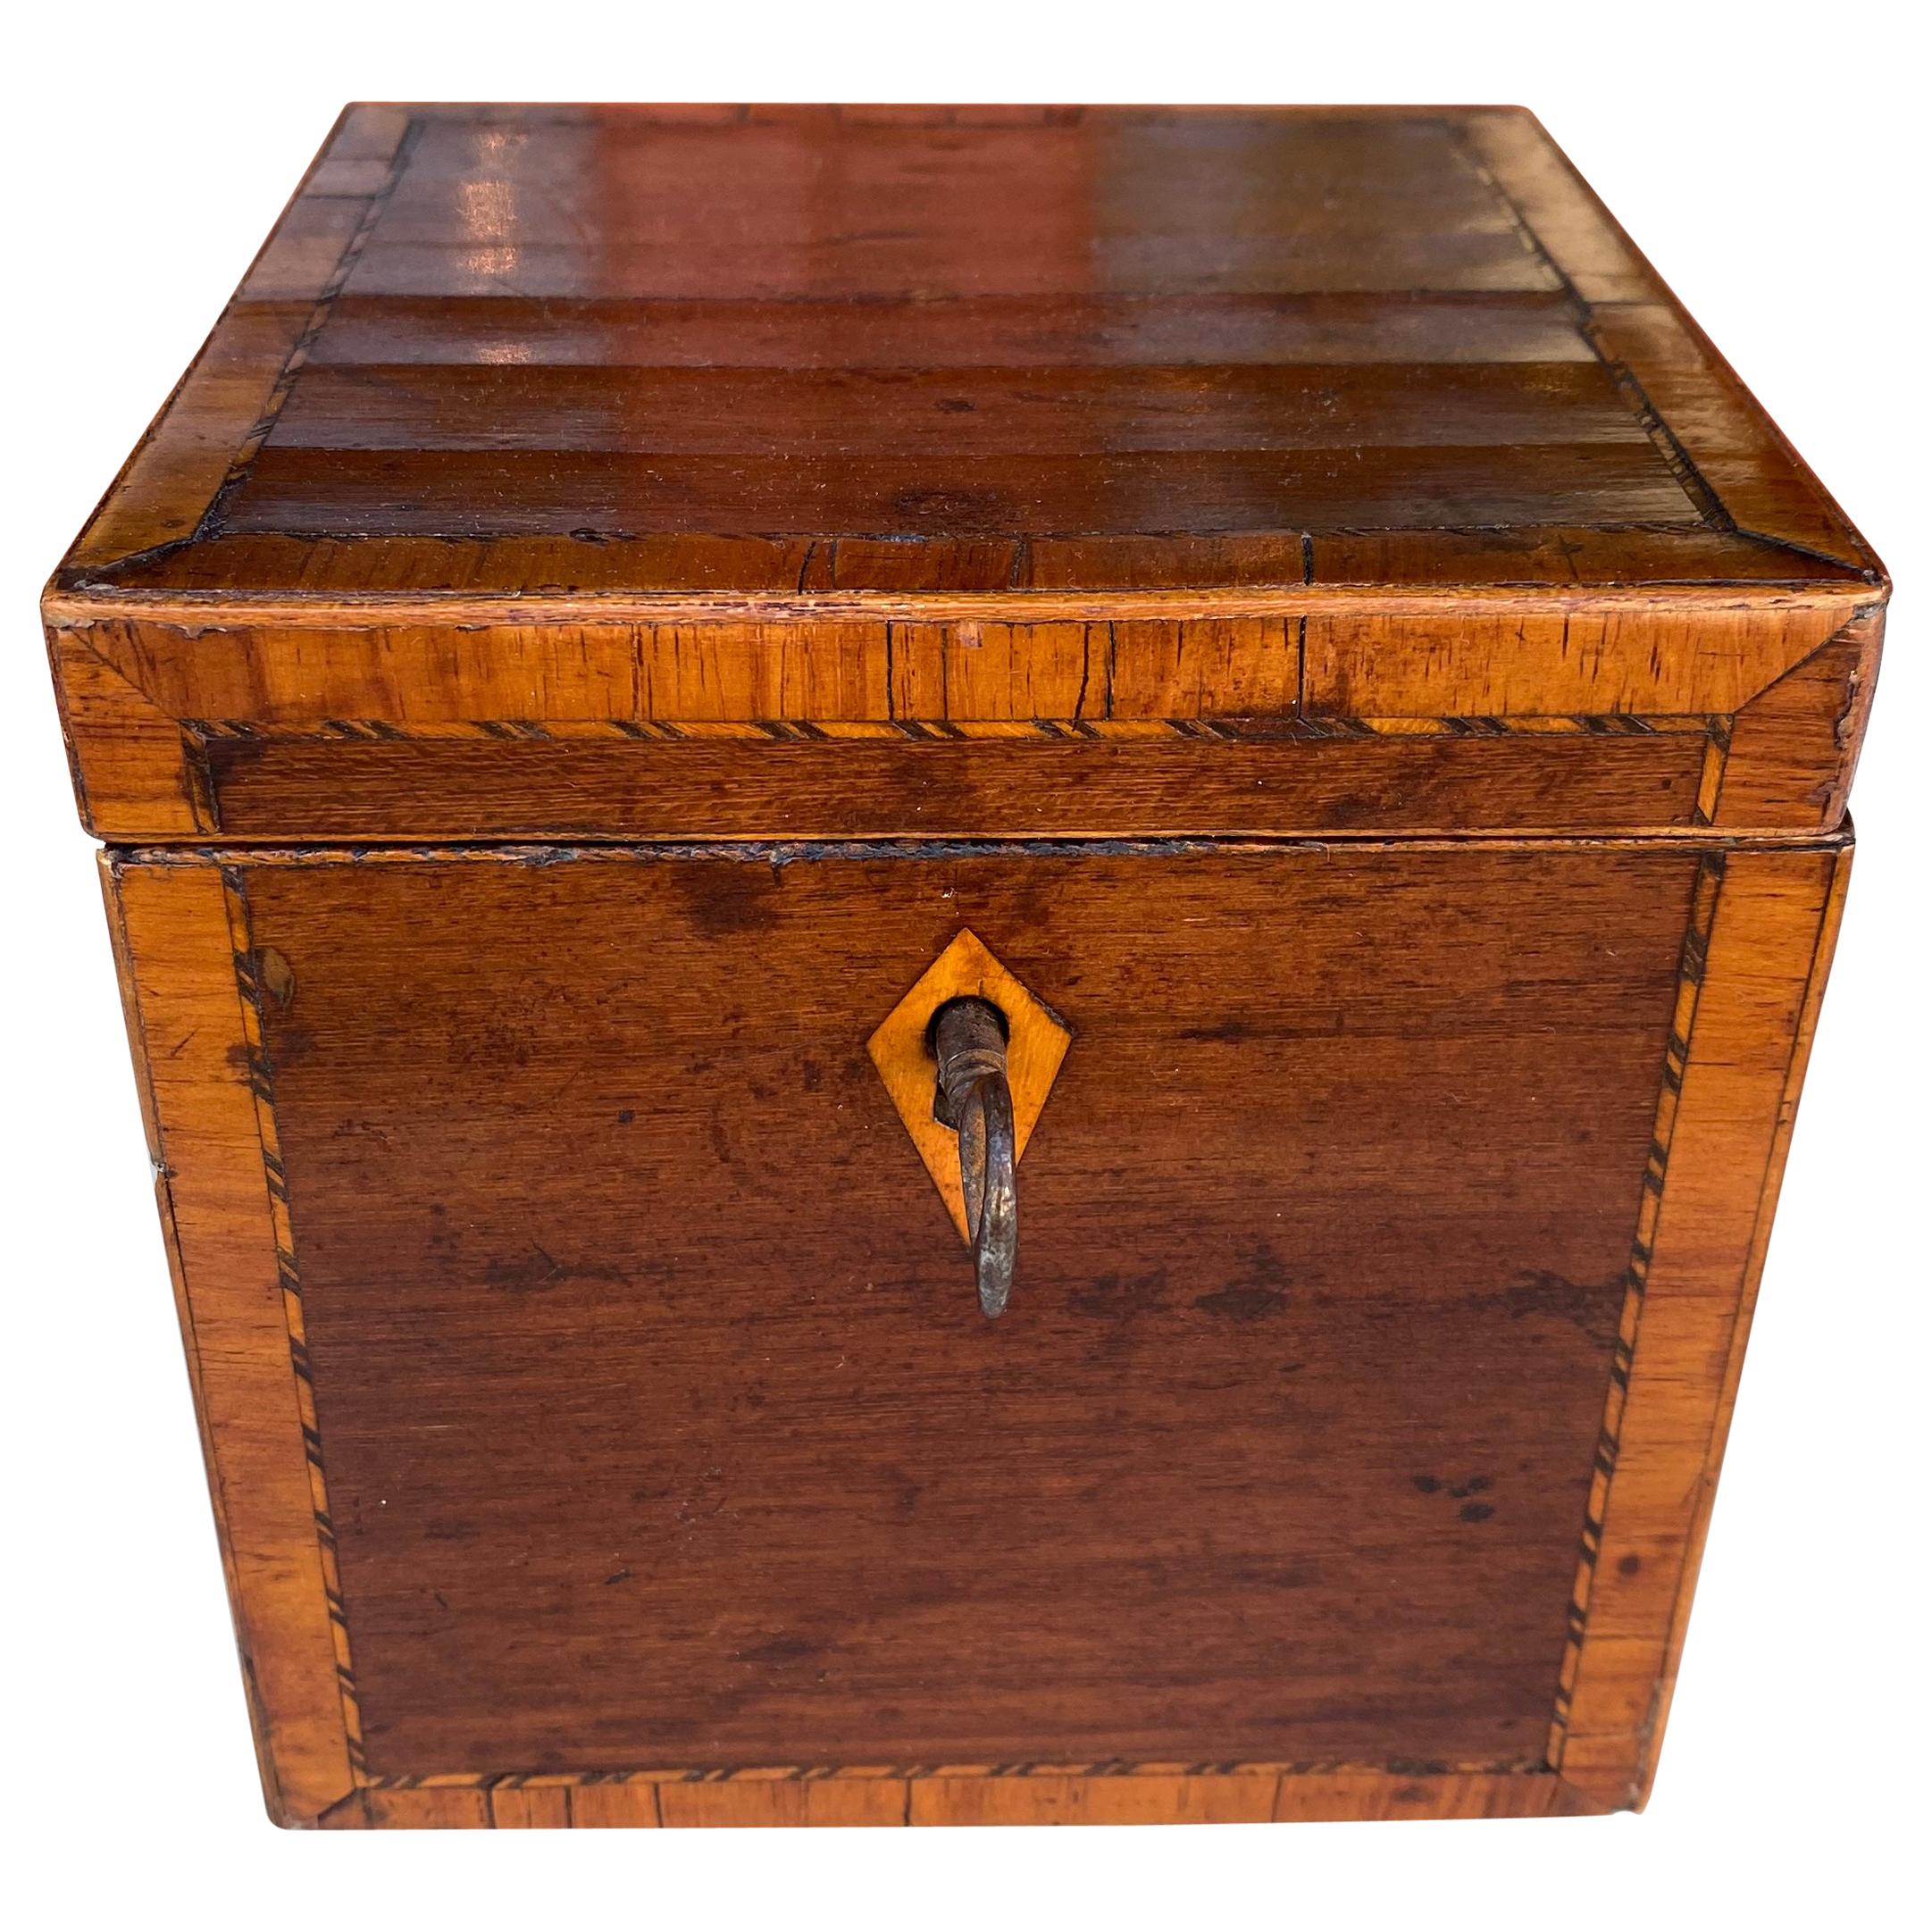 Mahogany inlaid cube tea caddy with key early 19th century